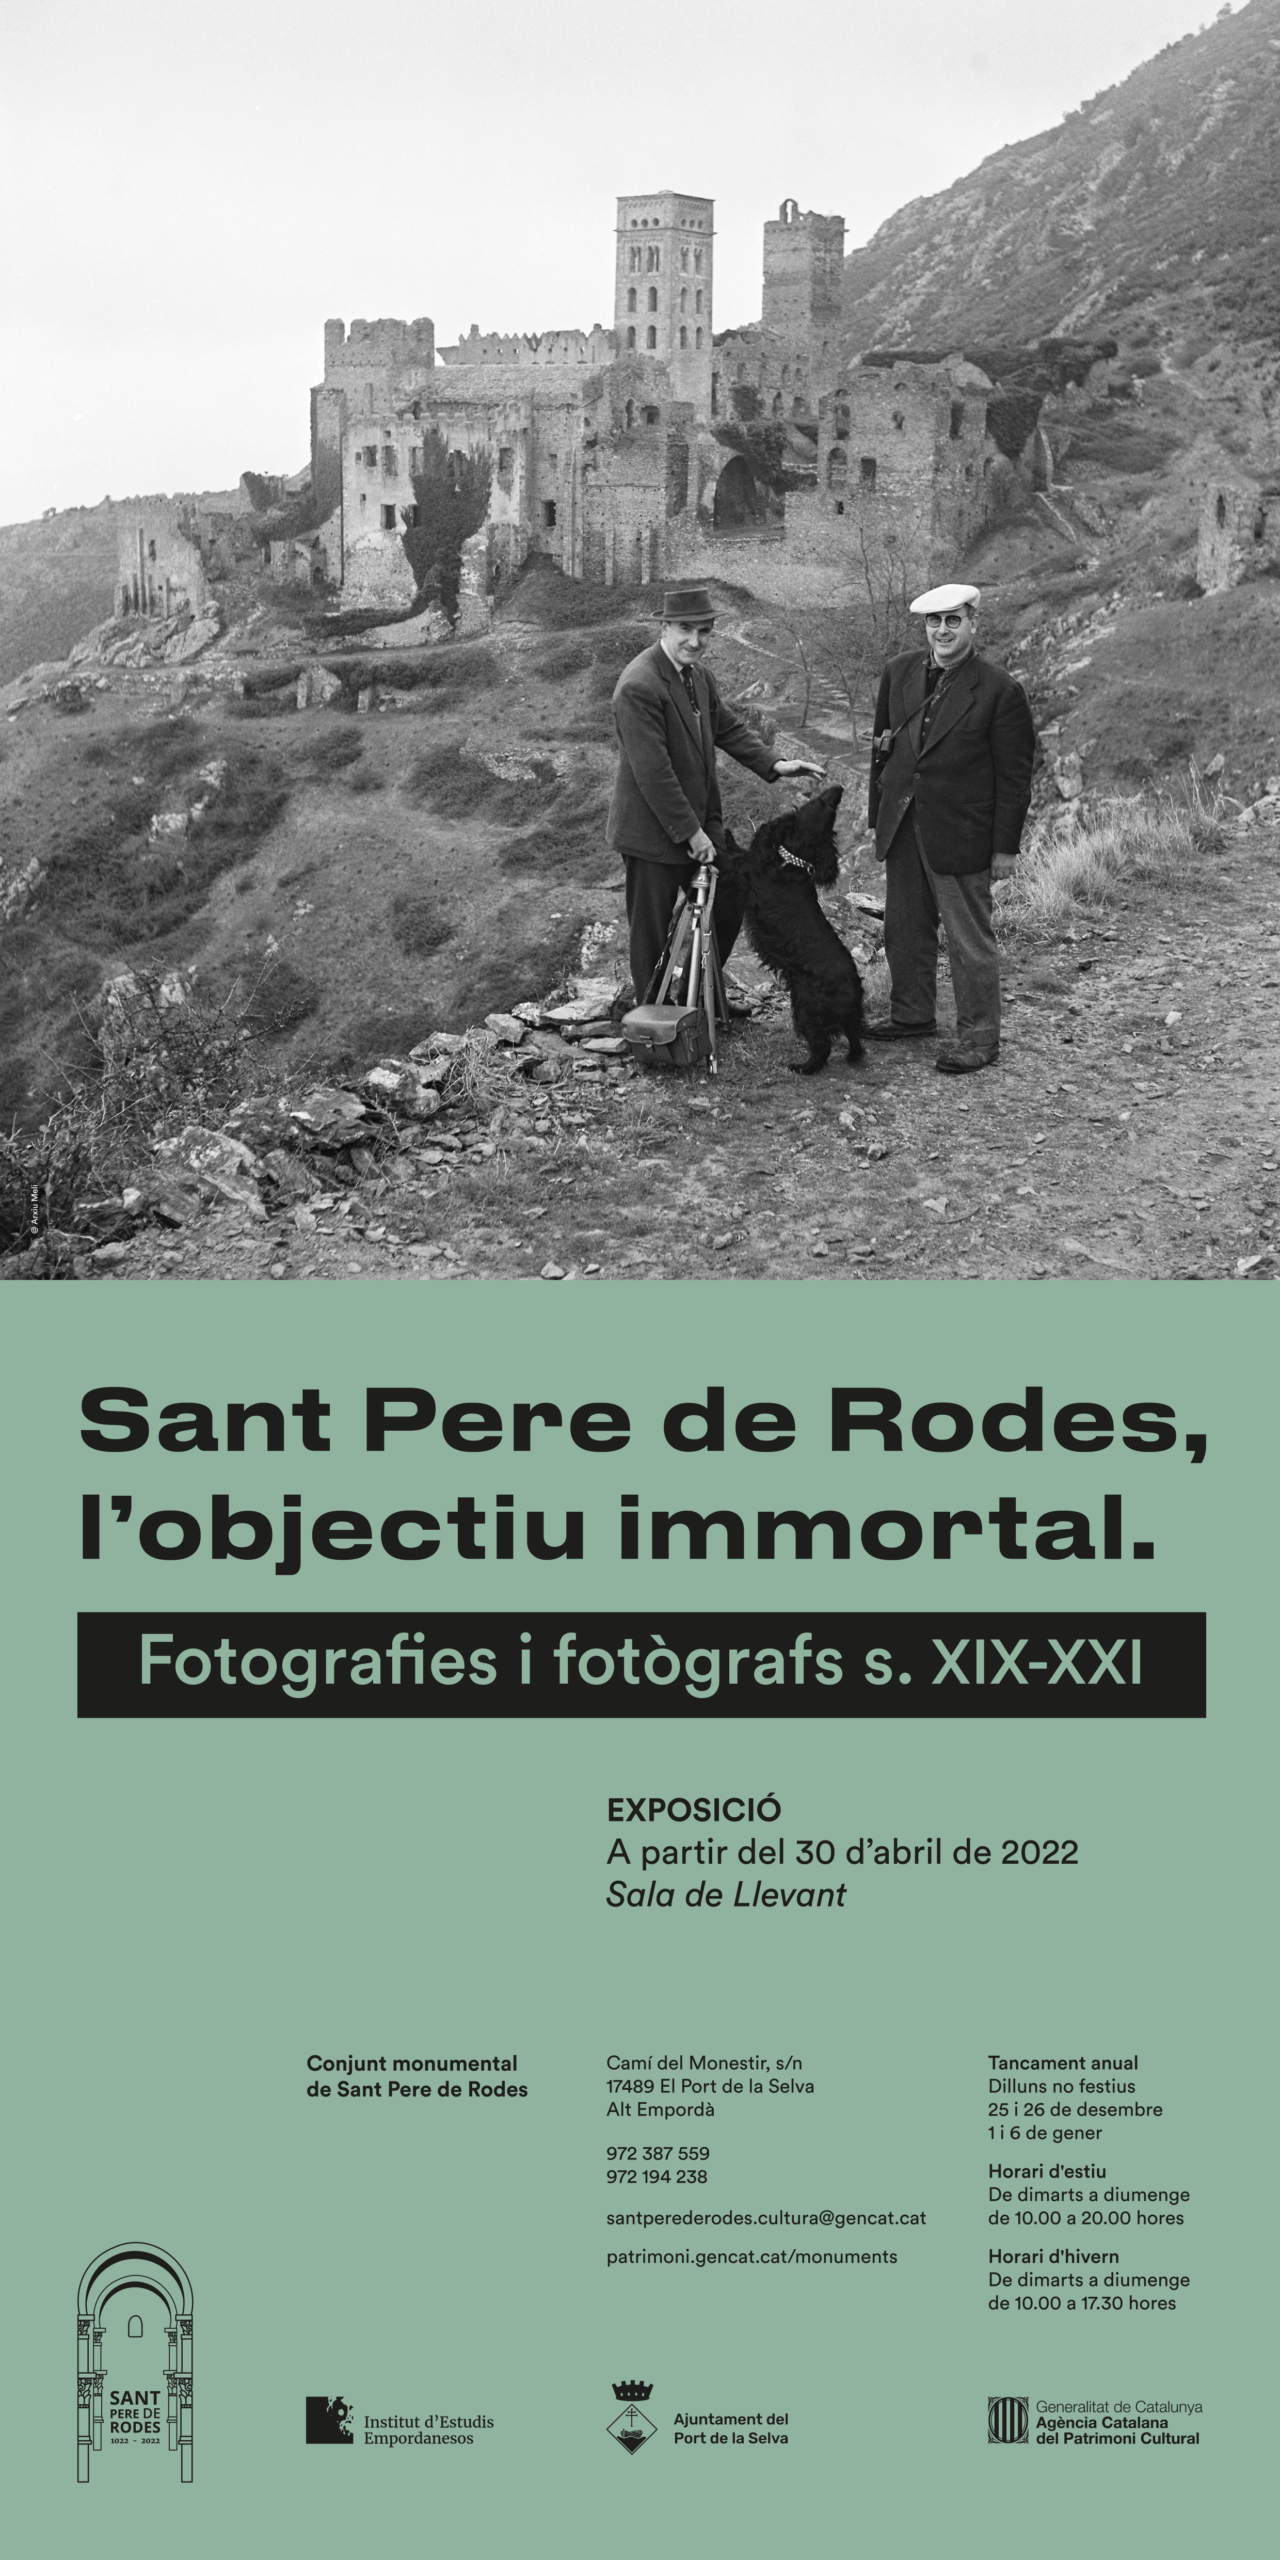 Exposició fotogràfica a Sant Pere de Rodes